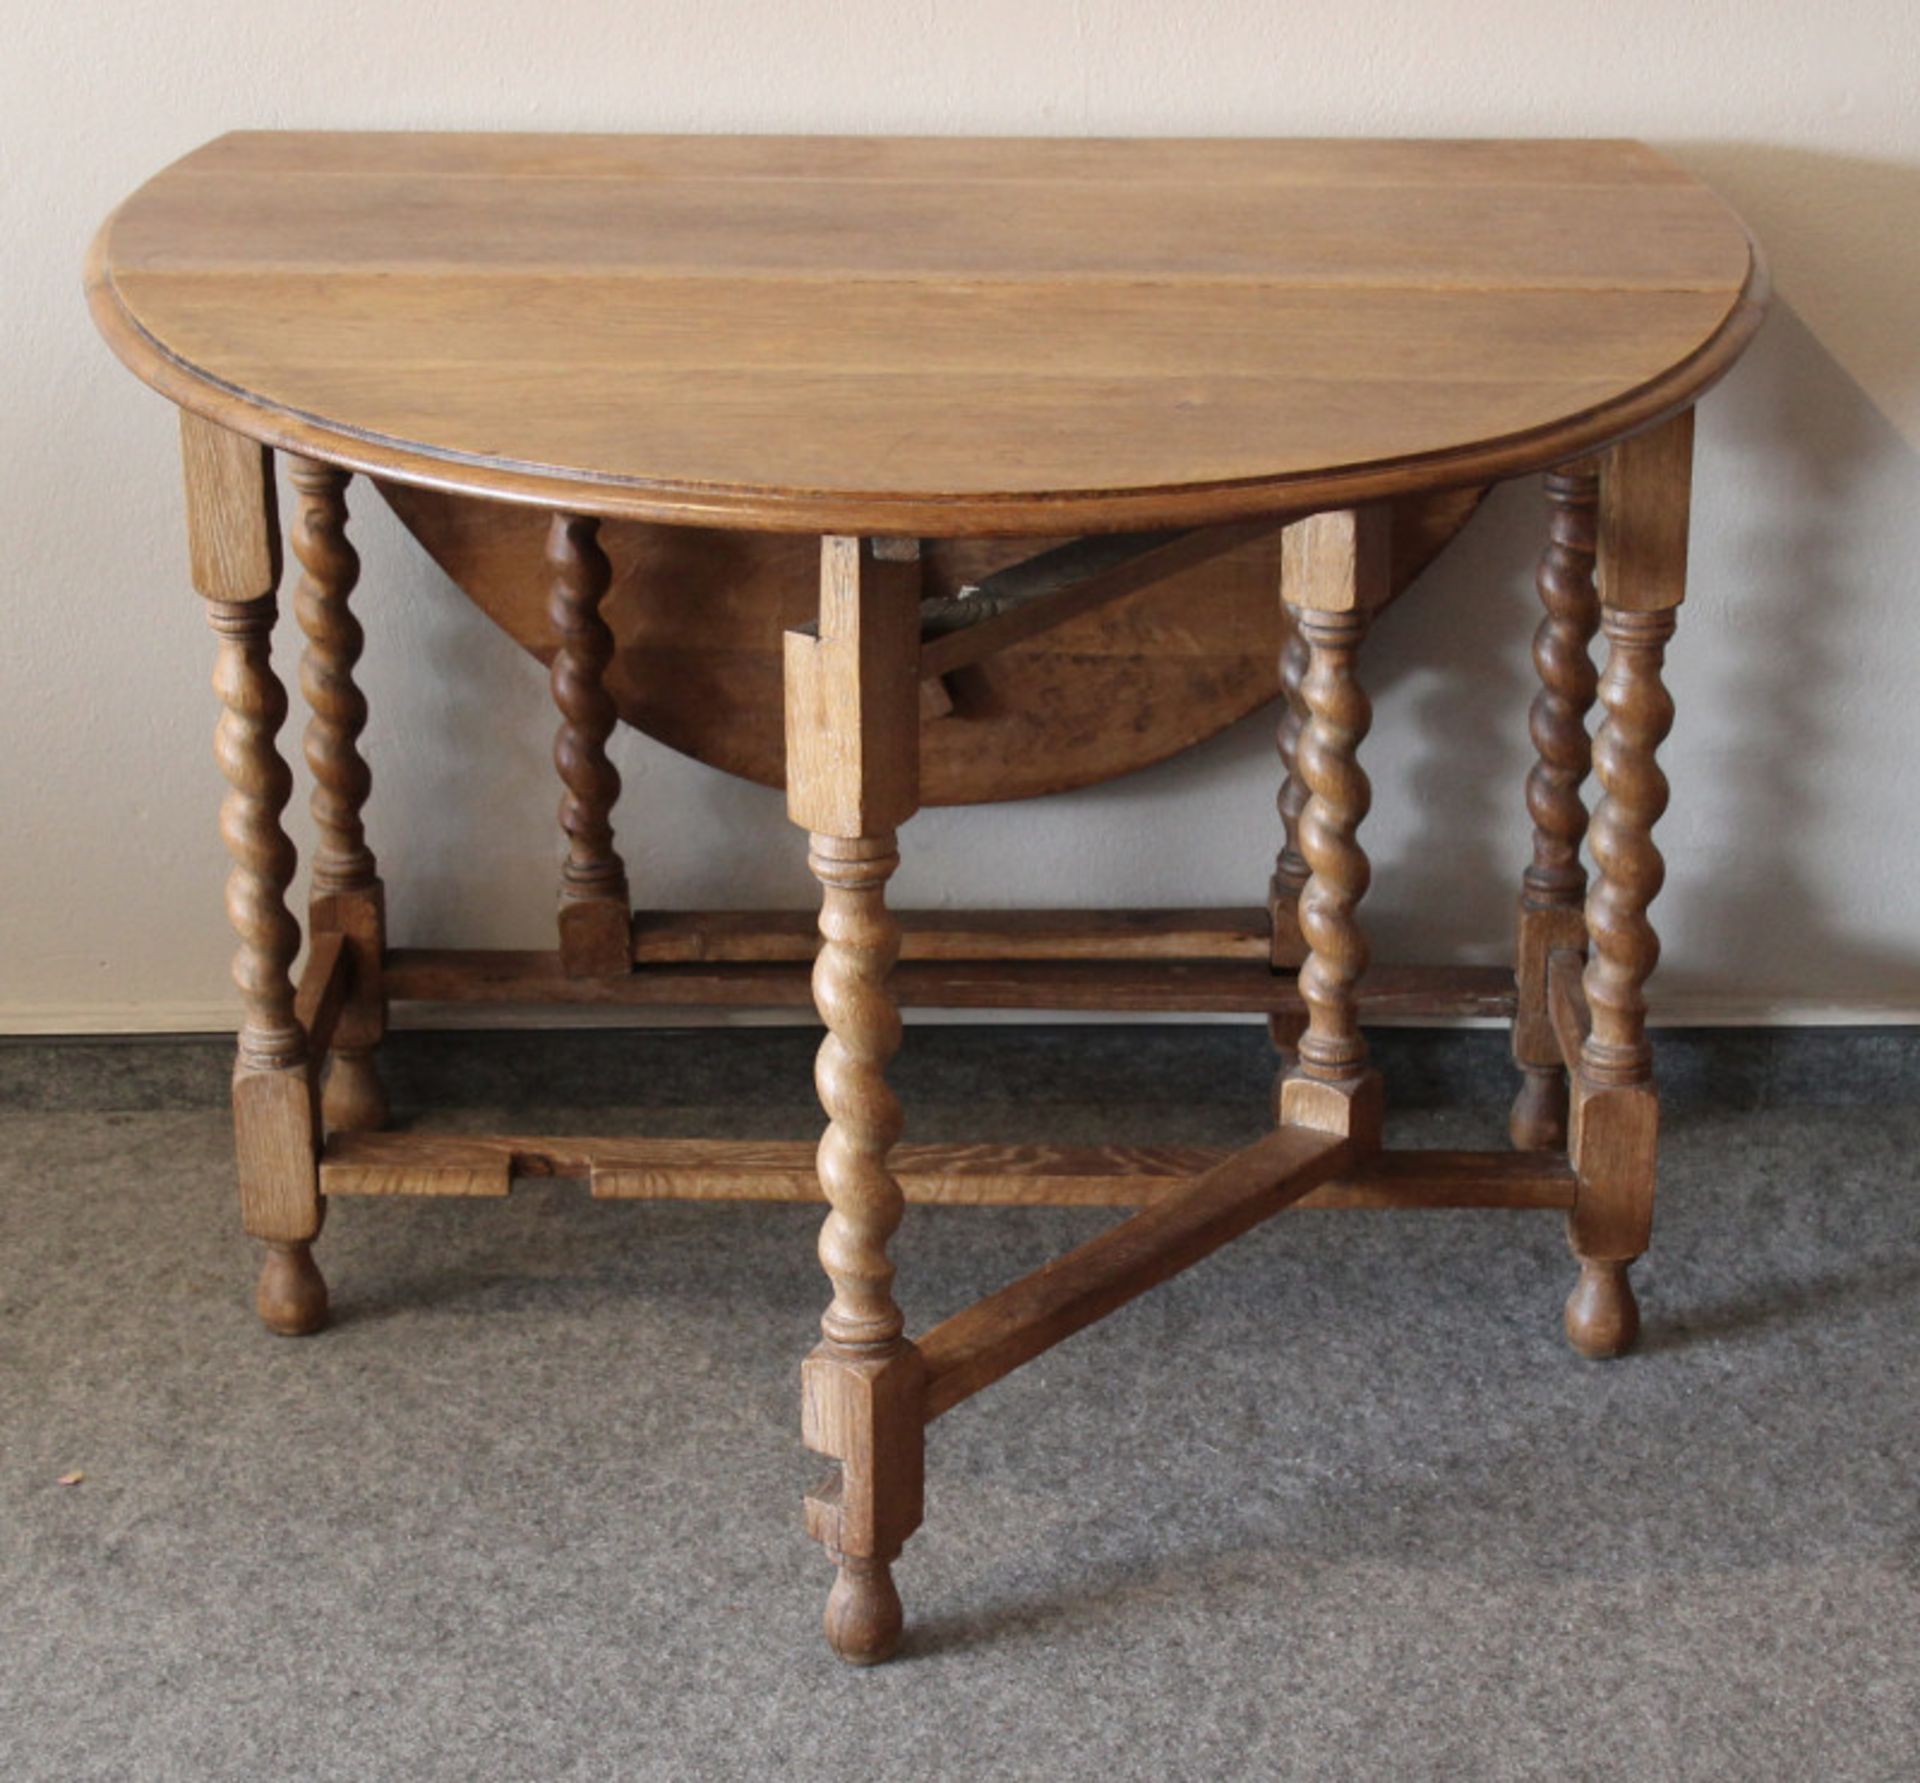 Englischer Gateleg Table, Eiche/hell, um 1910beidseitig abklappbar, originaler Zustand, - Bild 2 aus 3